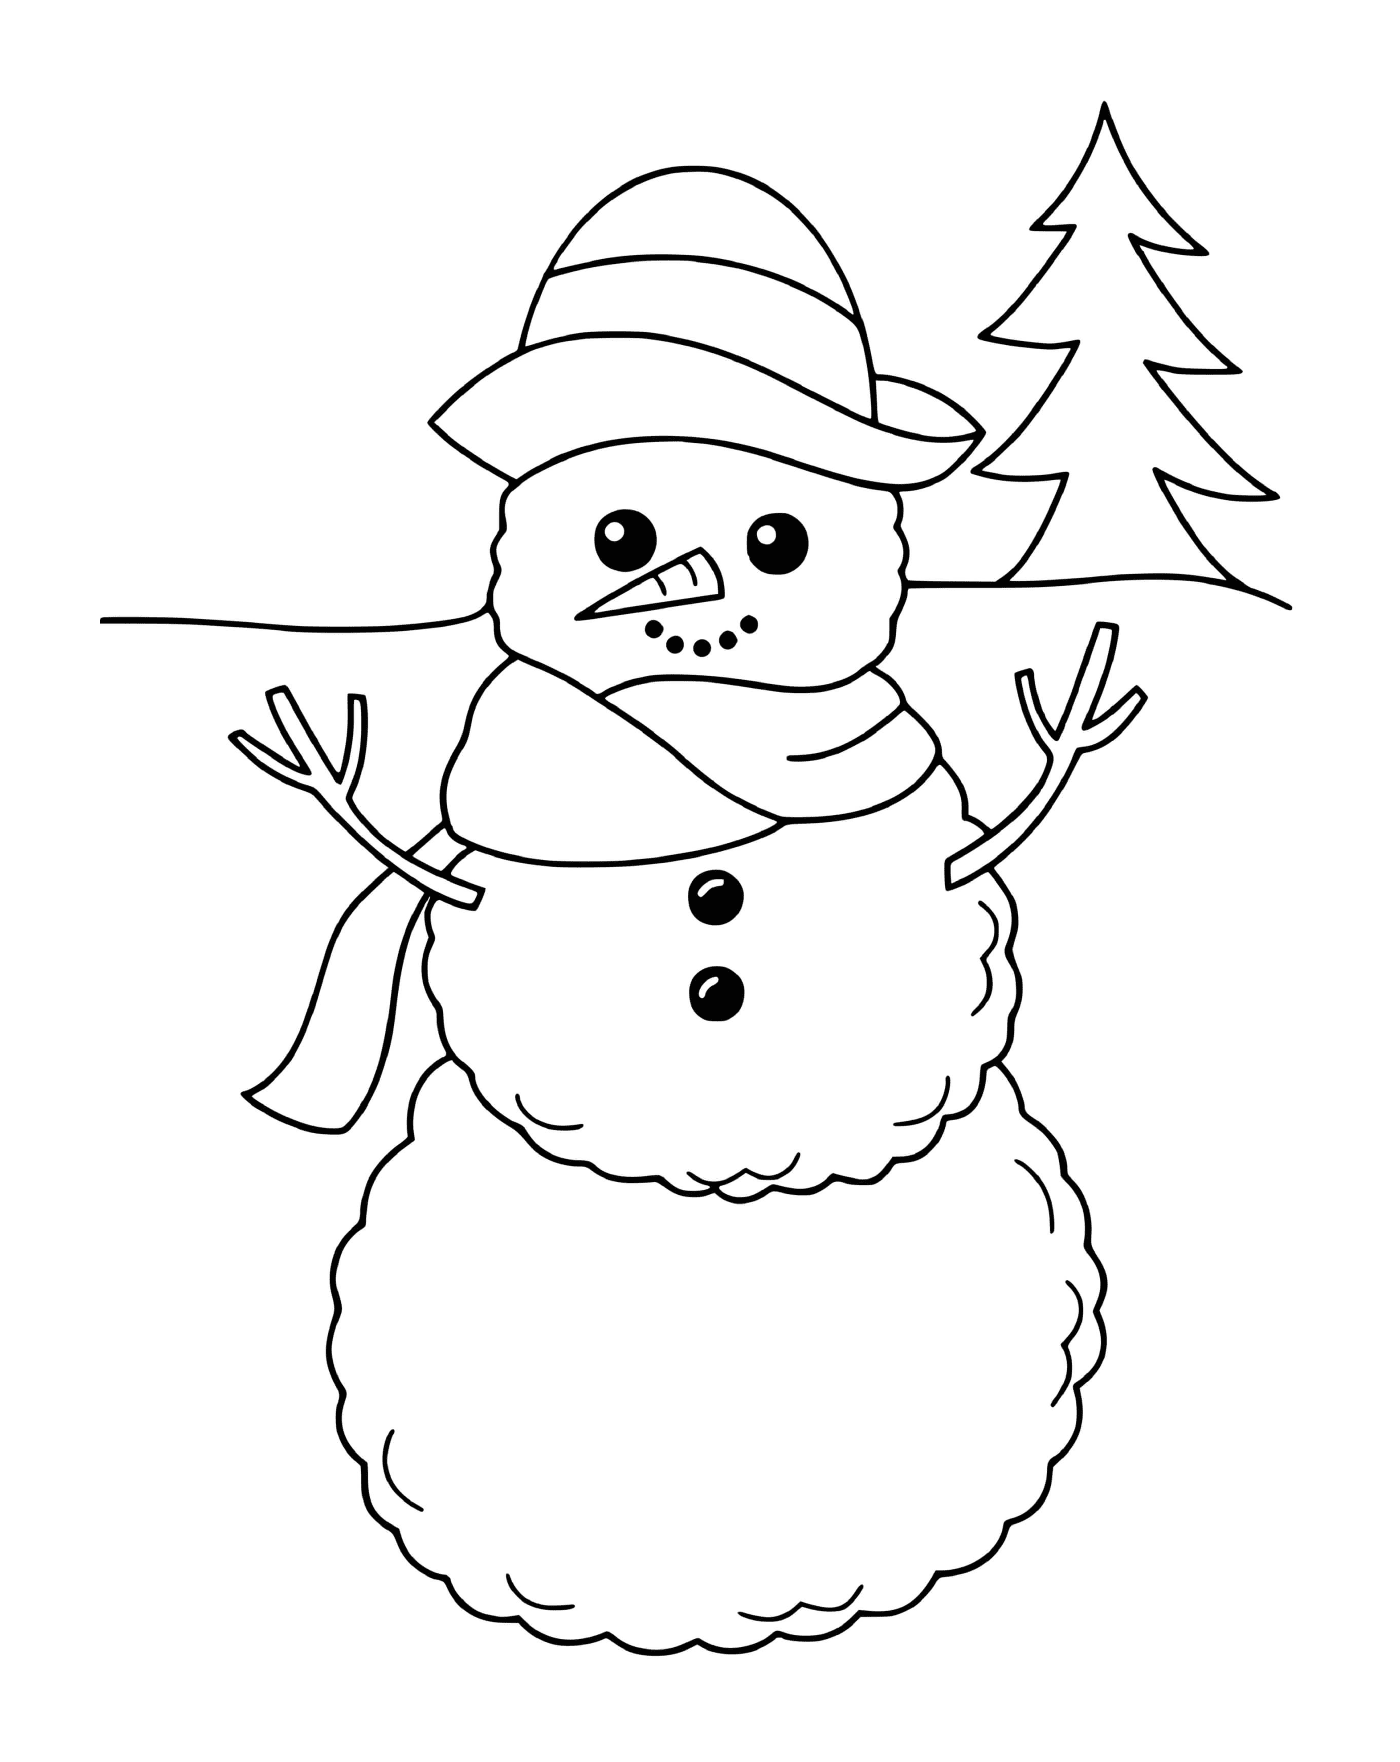  Adorável boneco de neve 